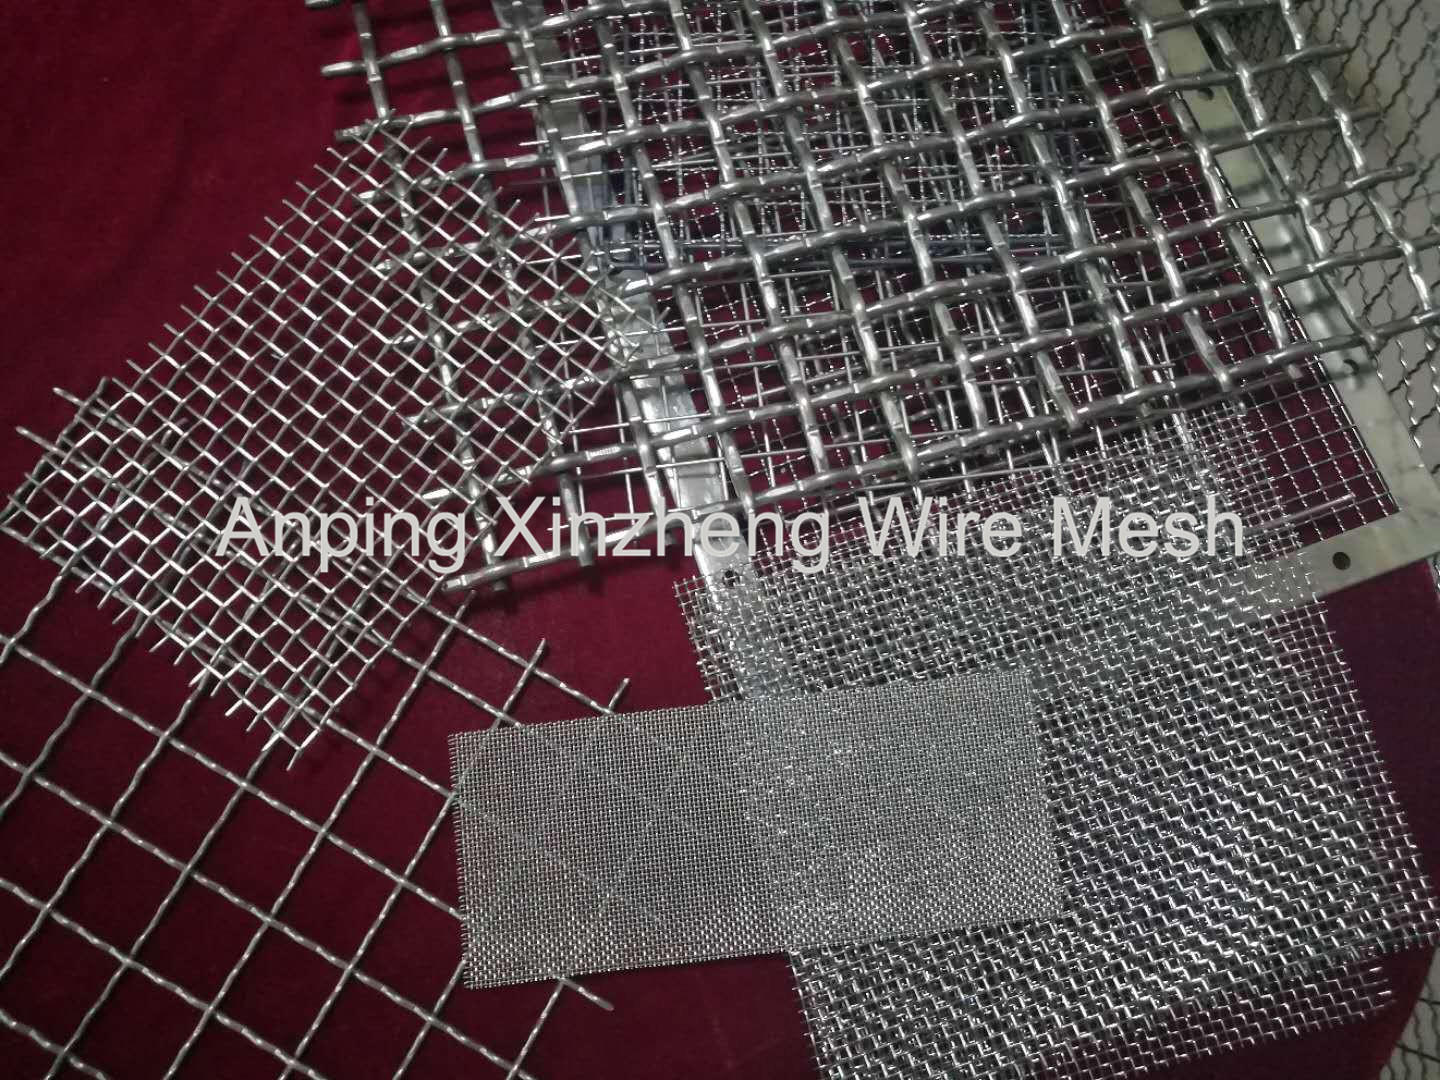 Crimped Wire Mesh